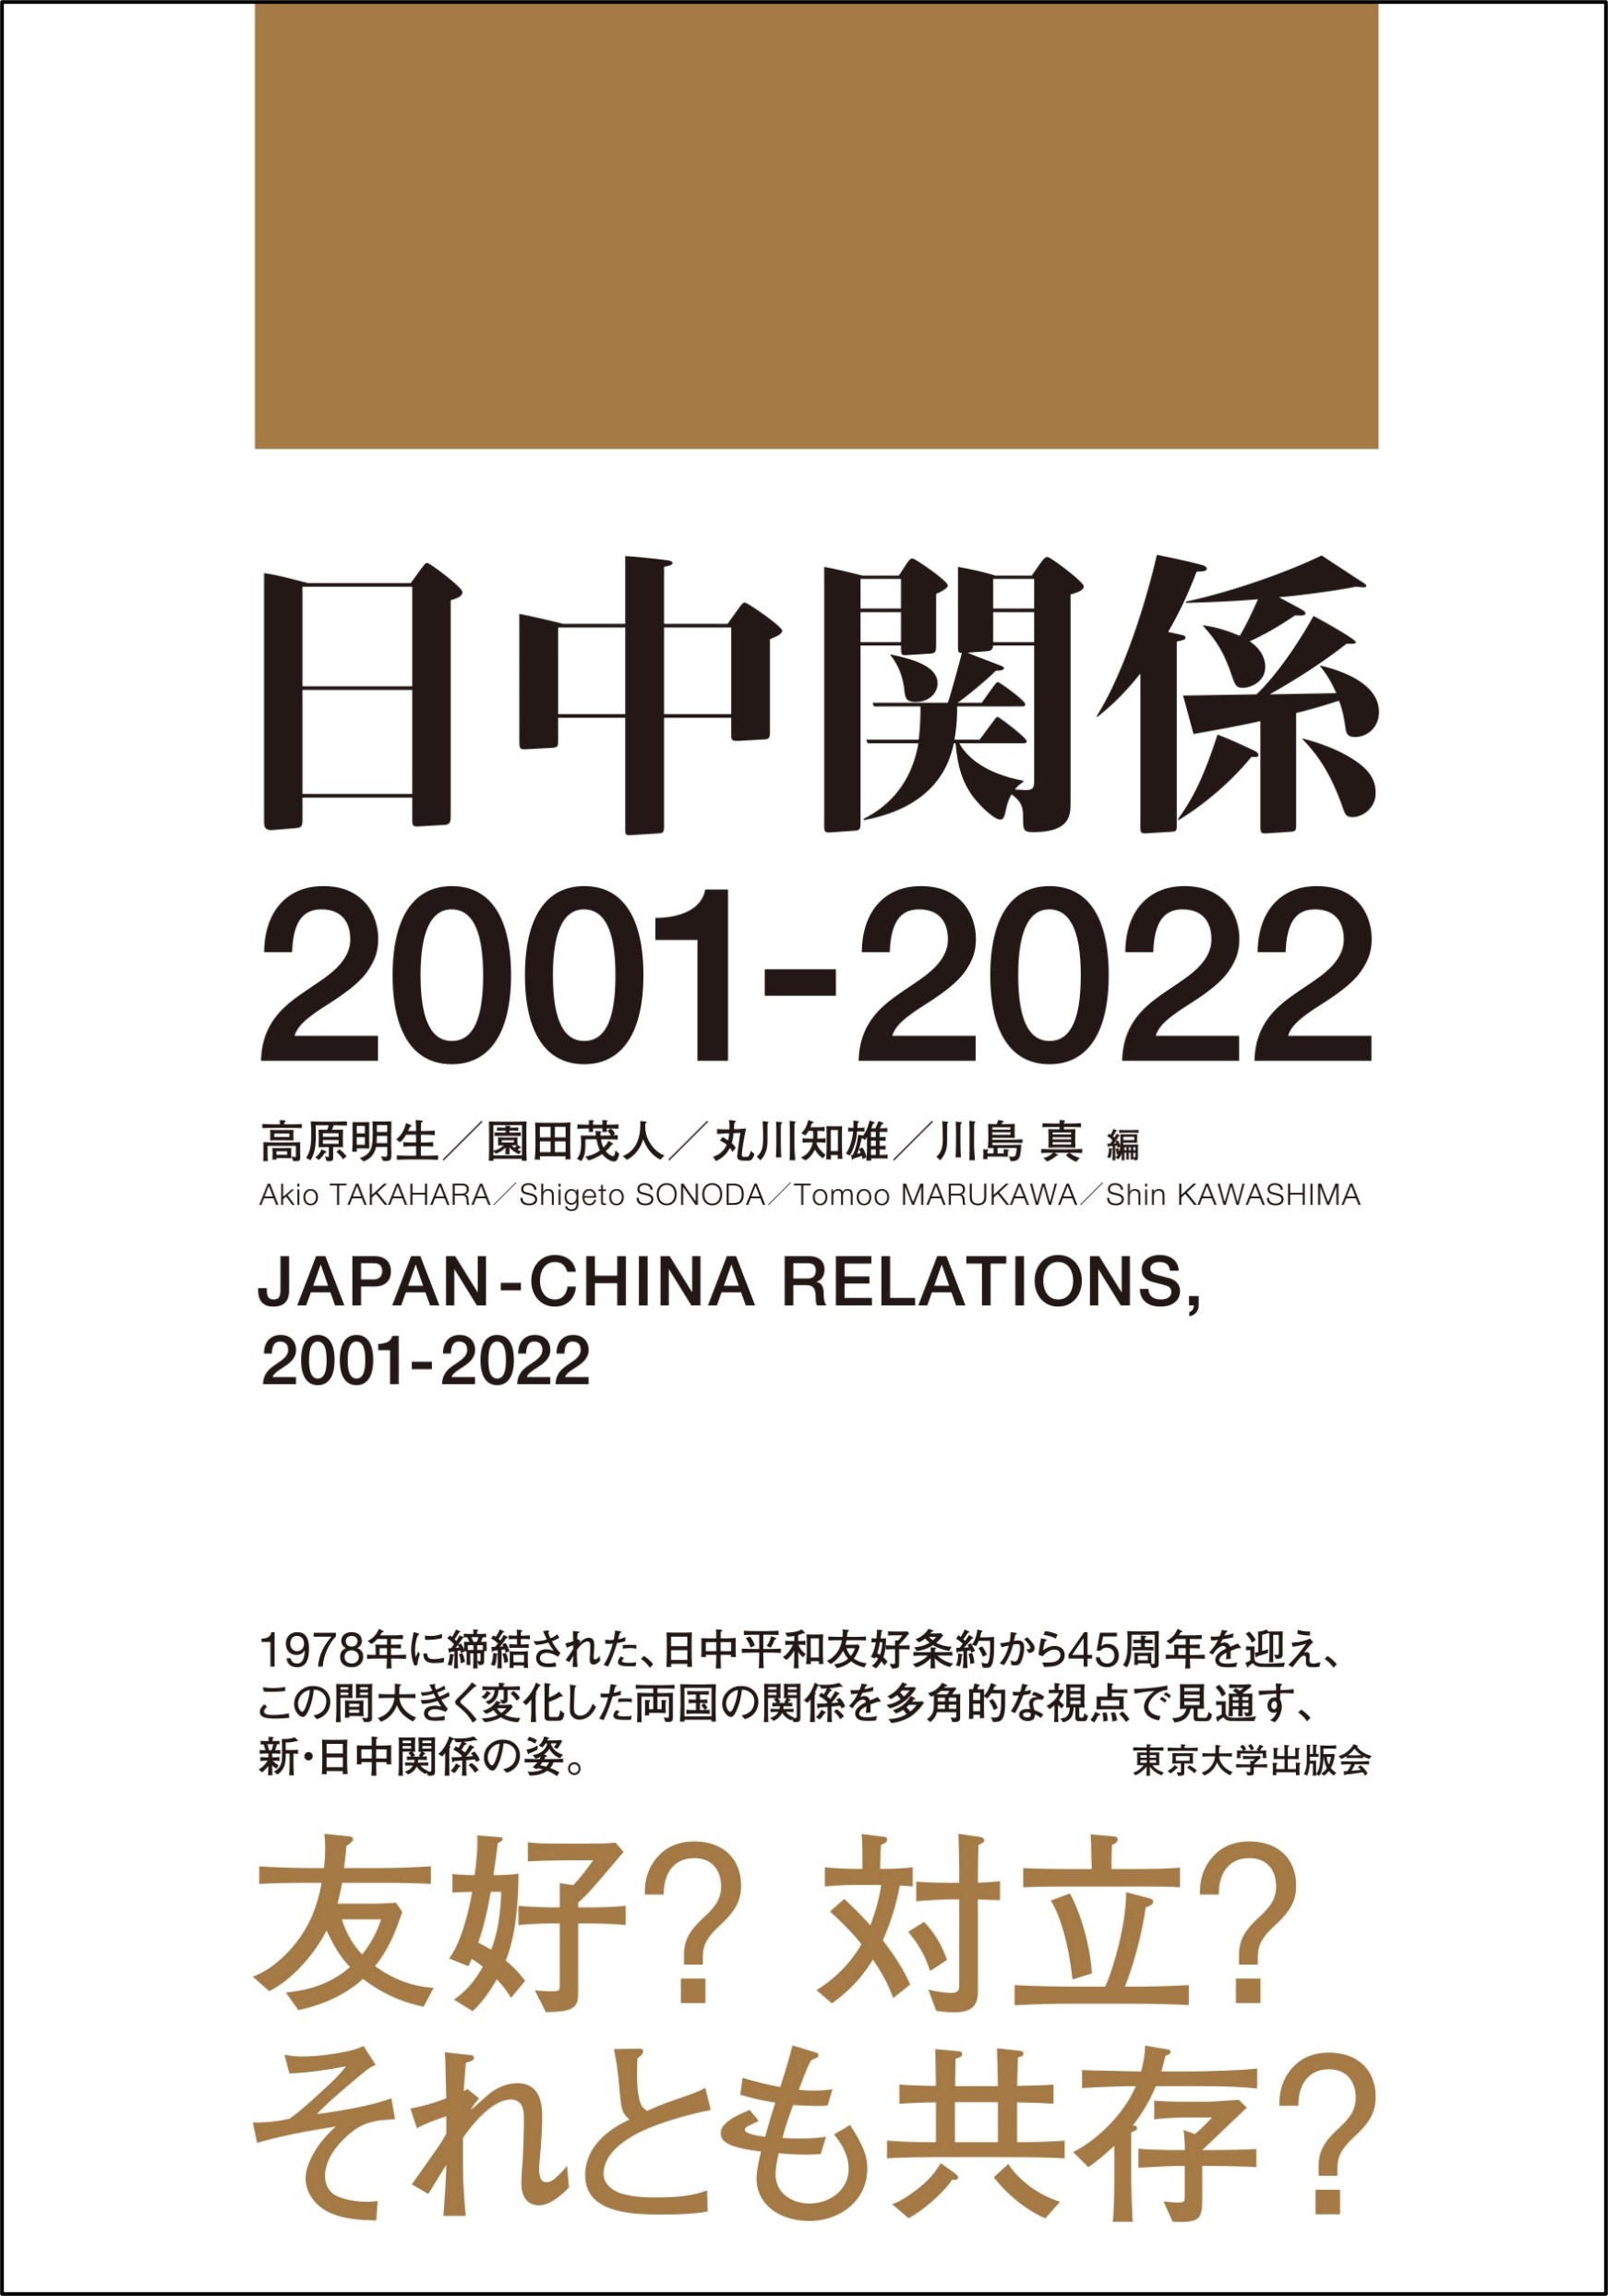 書籍「日中関係 2001-2022」刊行のお知らせ